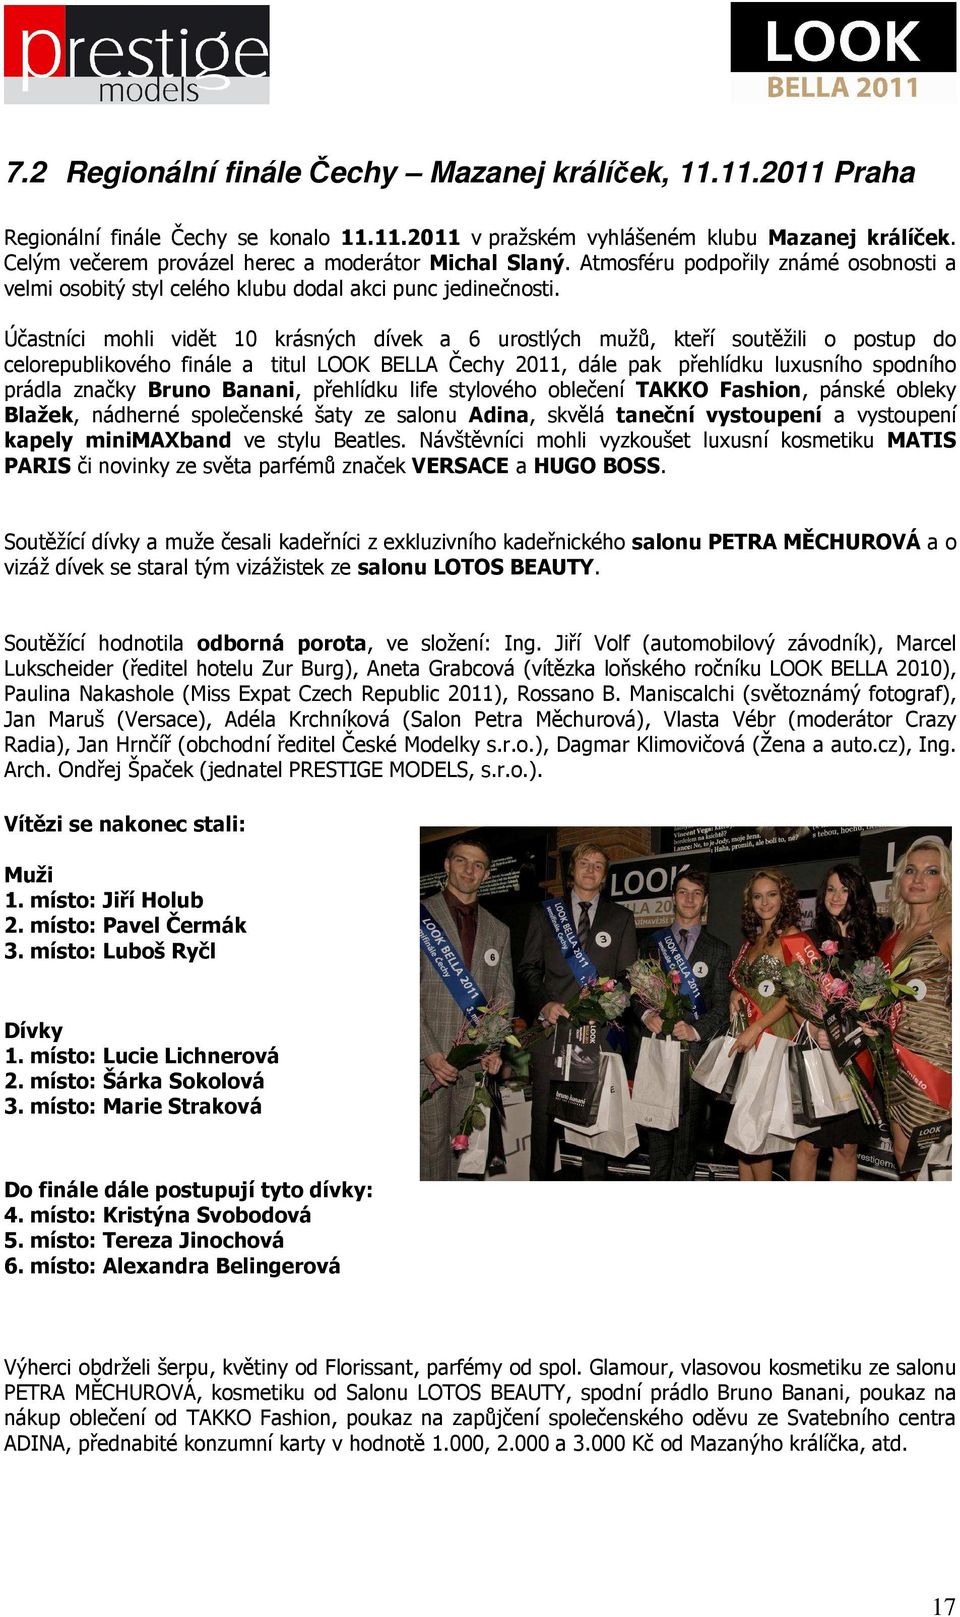 Účastníci mohli vidět 10 krásných dívek a 6 urostlých mužů, kteří soutěžili o postup do celorepublikového finále a titul LOOK BELLA Čechy 2011, dále pak přehlídku luxusního spodního prádla značky